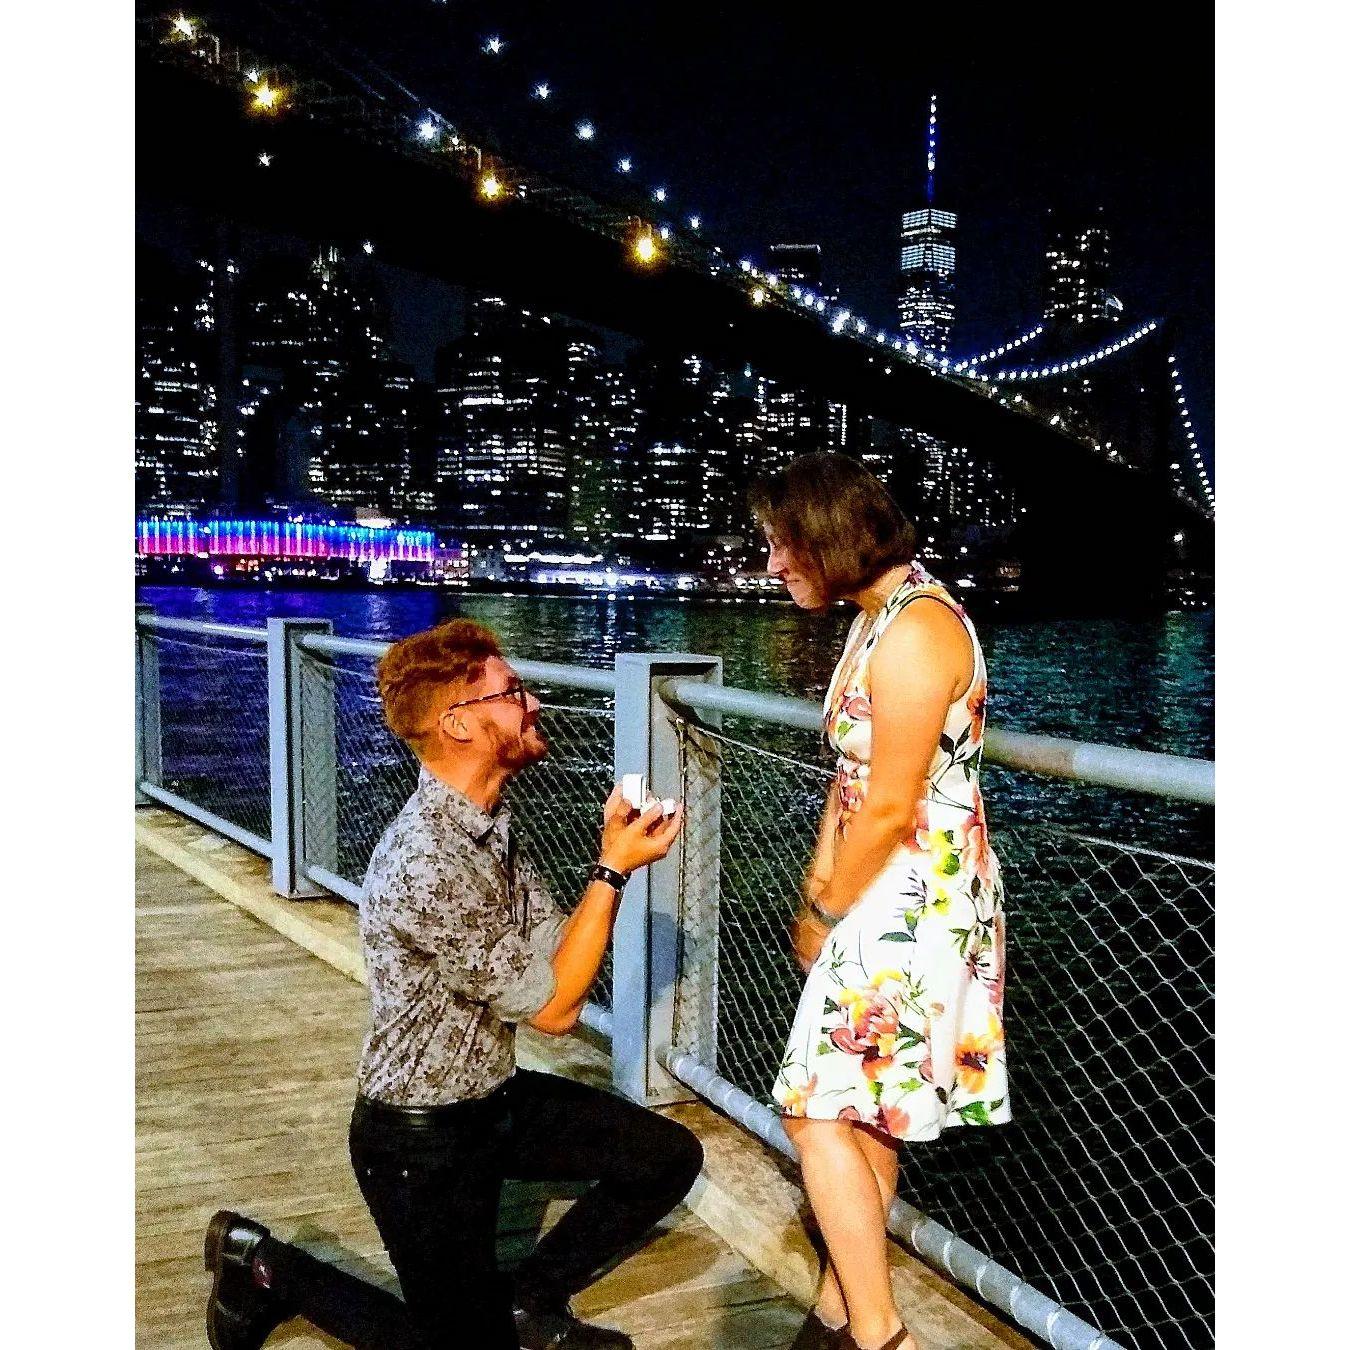 The "YES" photo. Brooklyn Bridge at night. May 21 2022